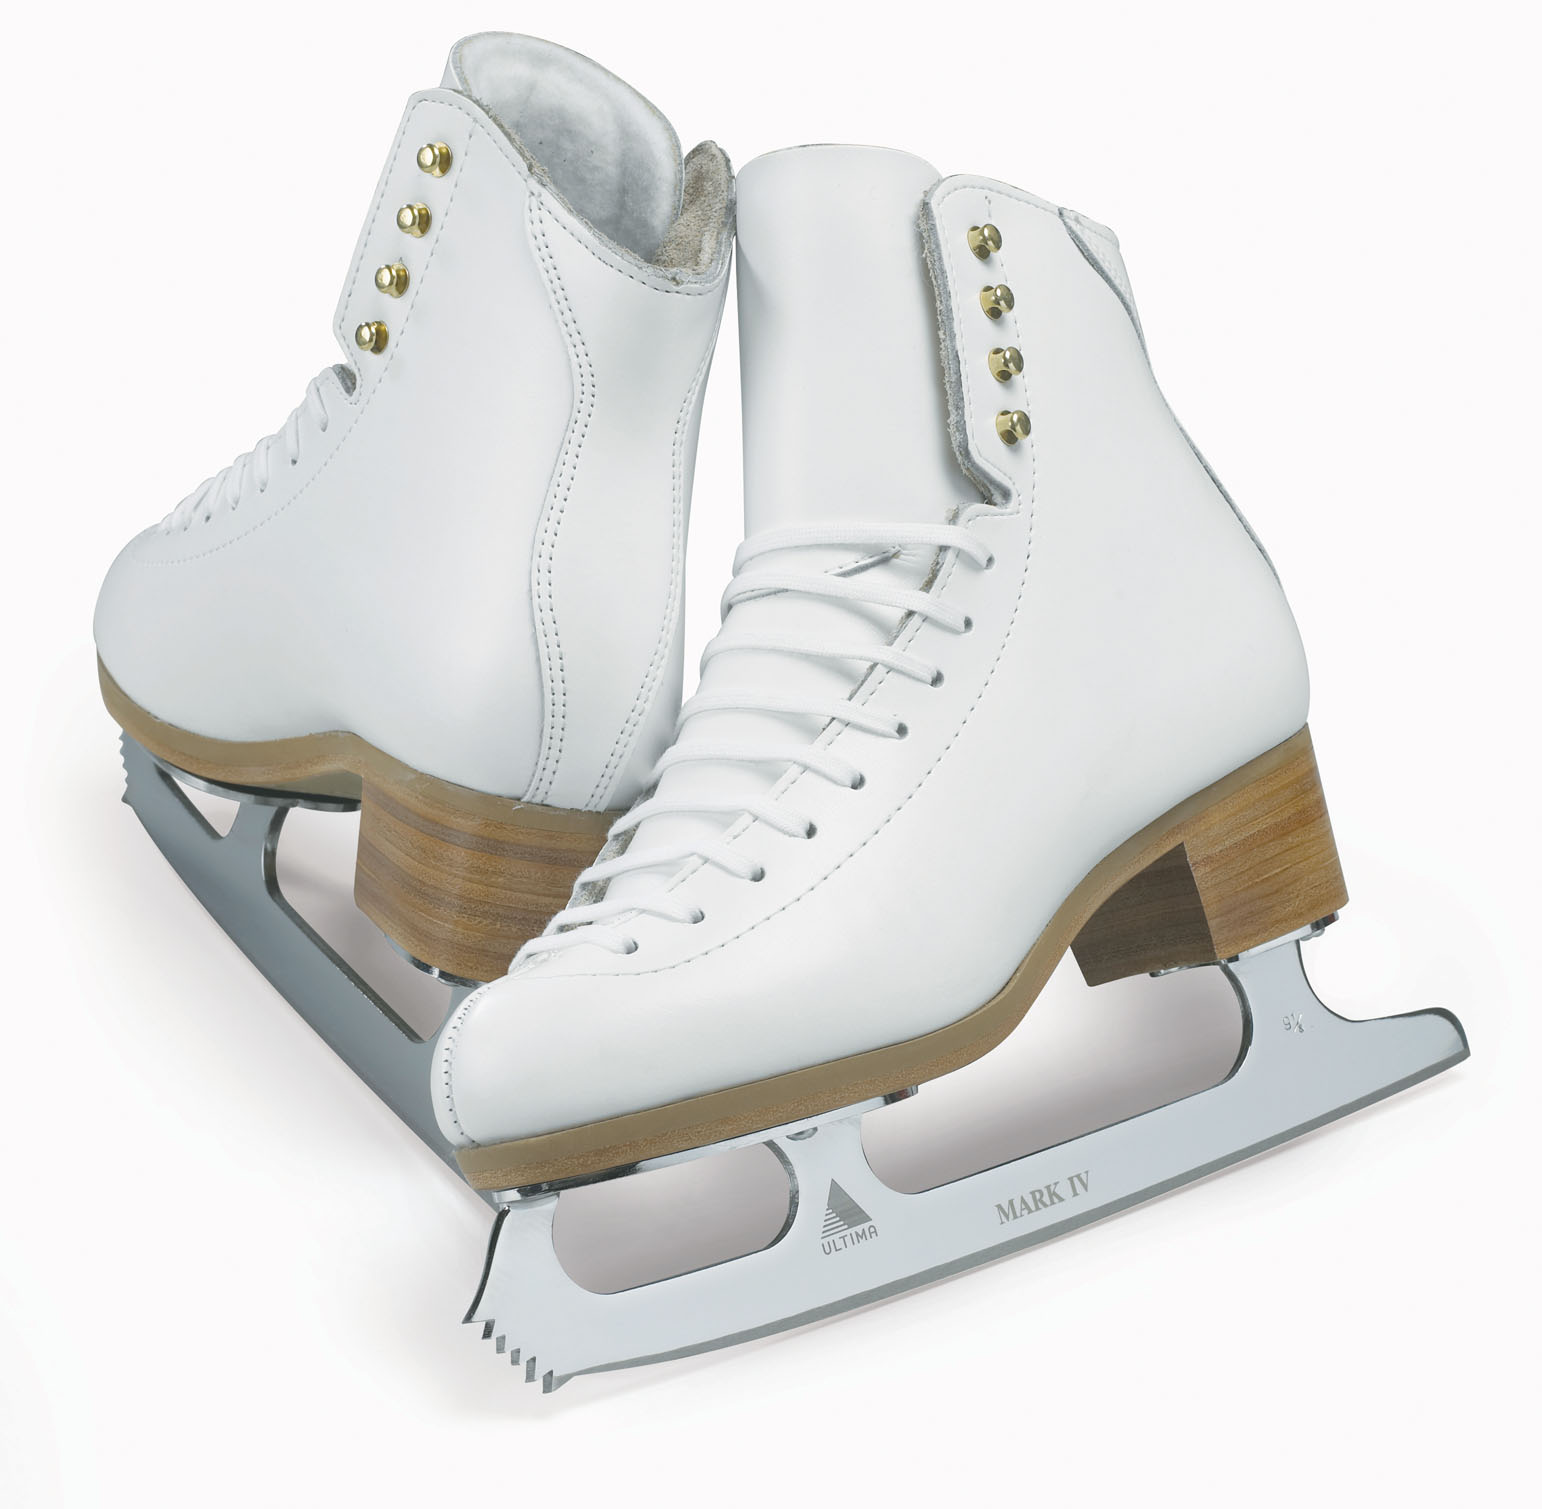 ice skating shoes wallpaper